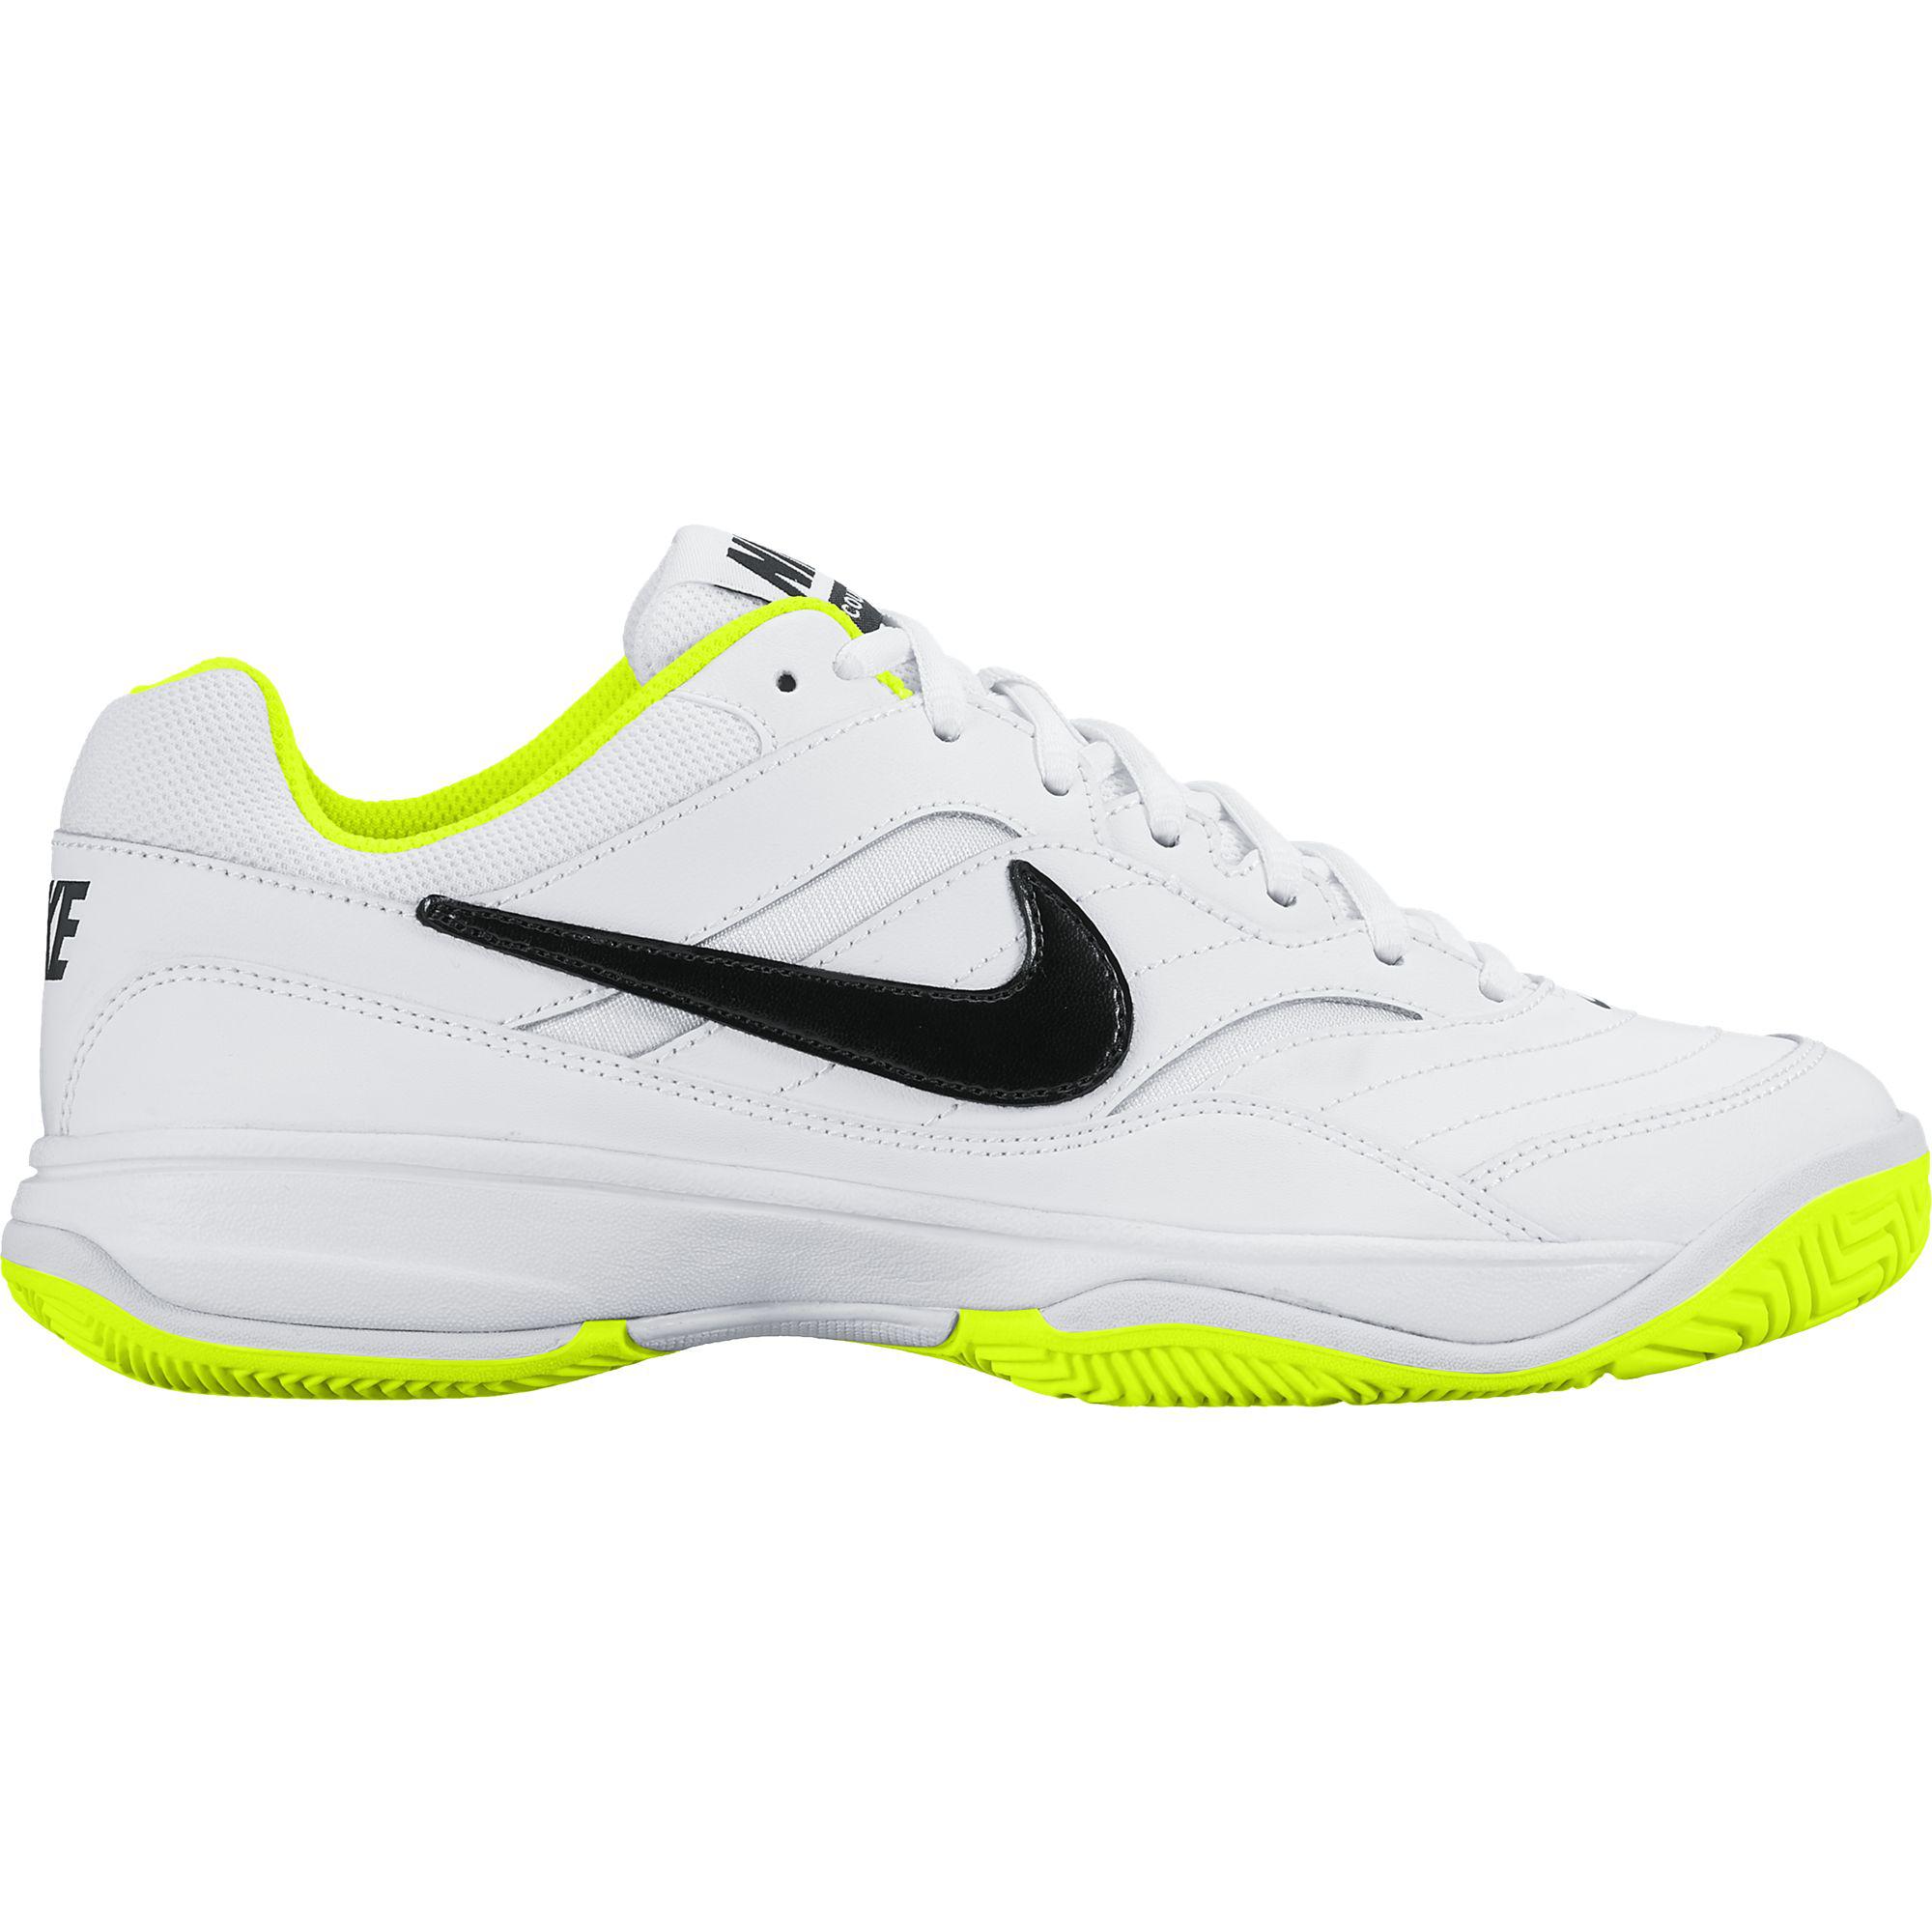 Nike Womens Court Lite Tennis Shoes - White/Black/Volt - wcy.wat.edu.pl